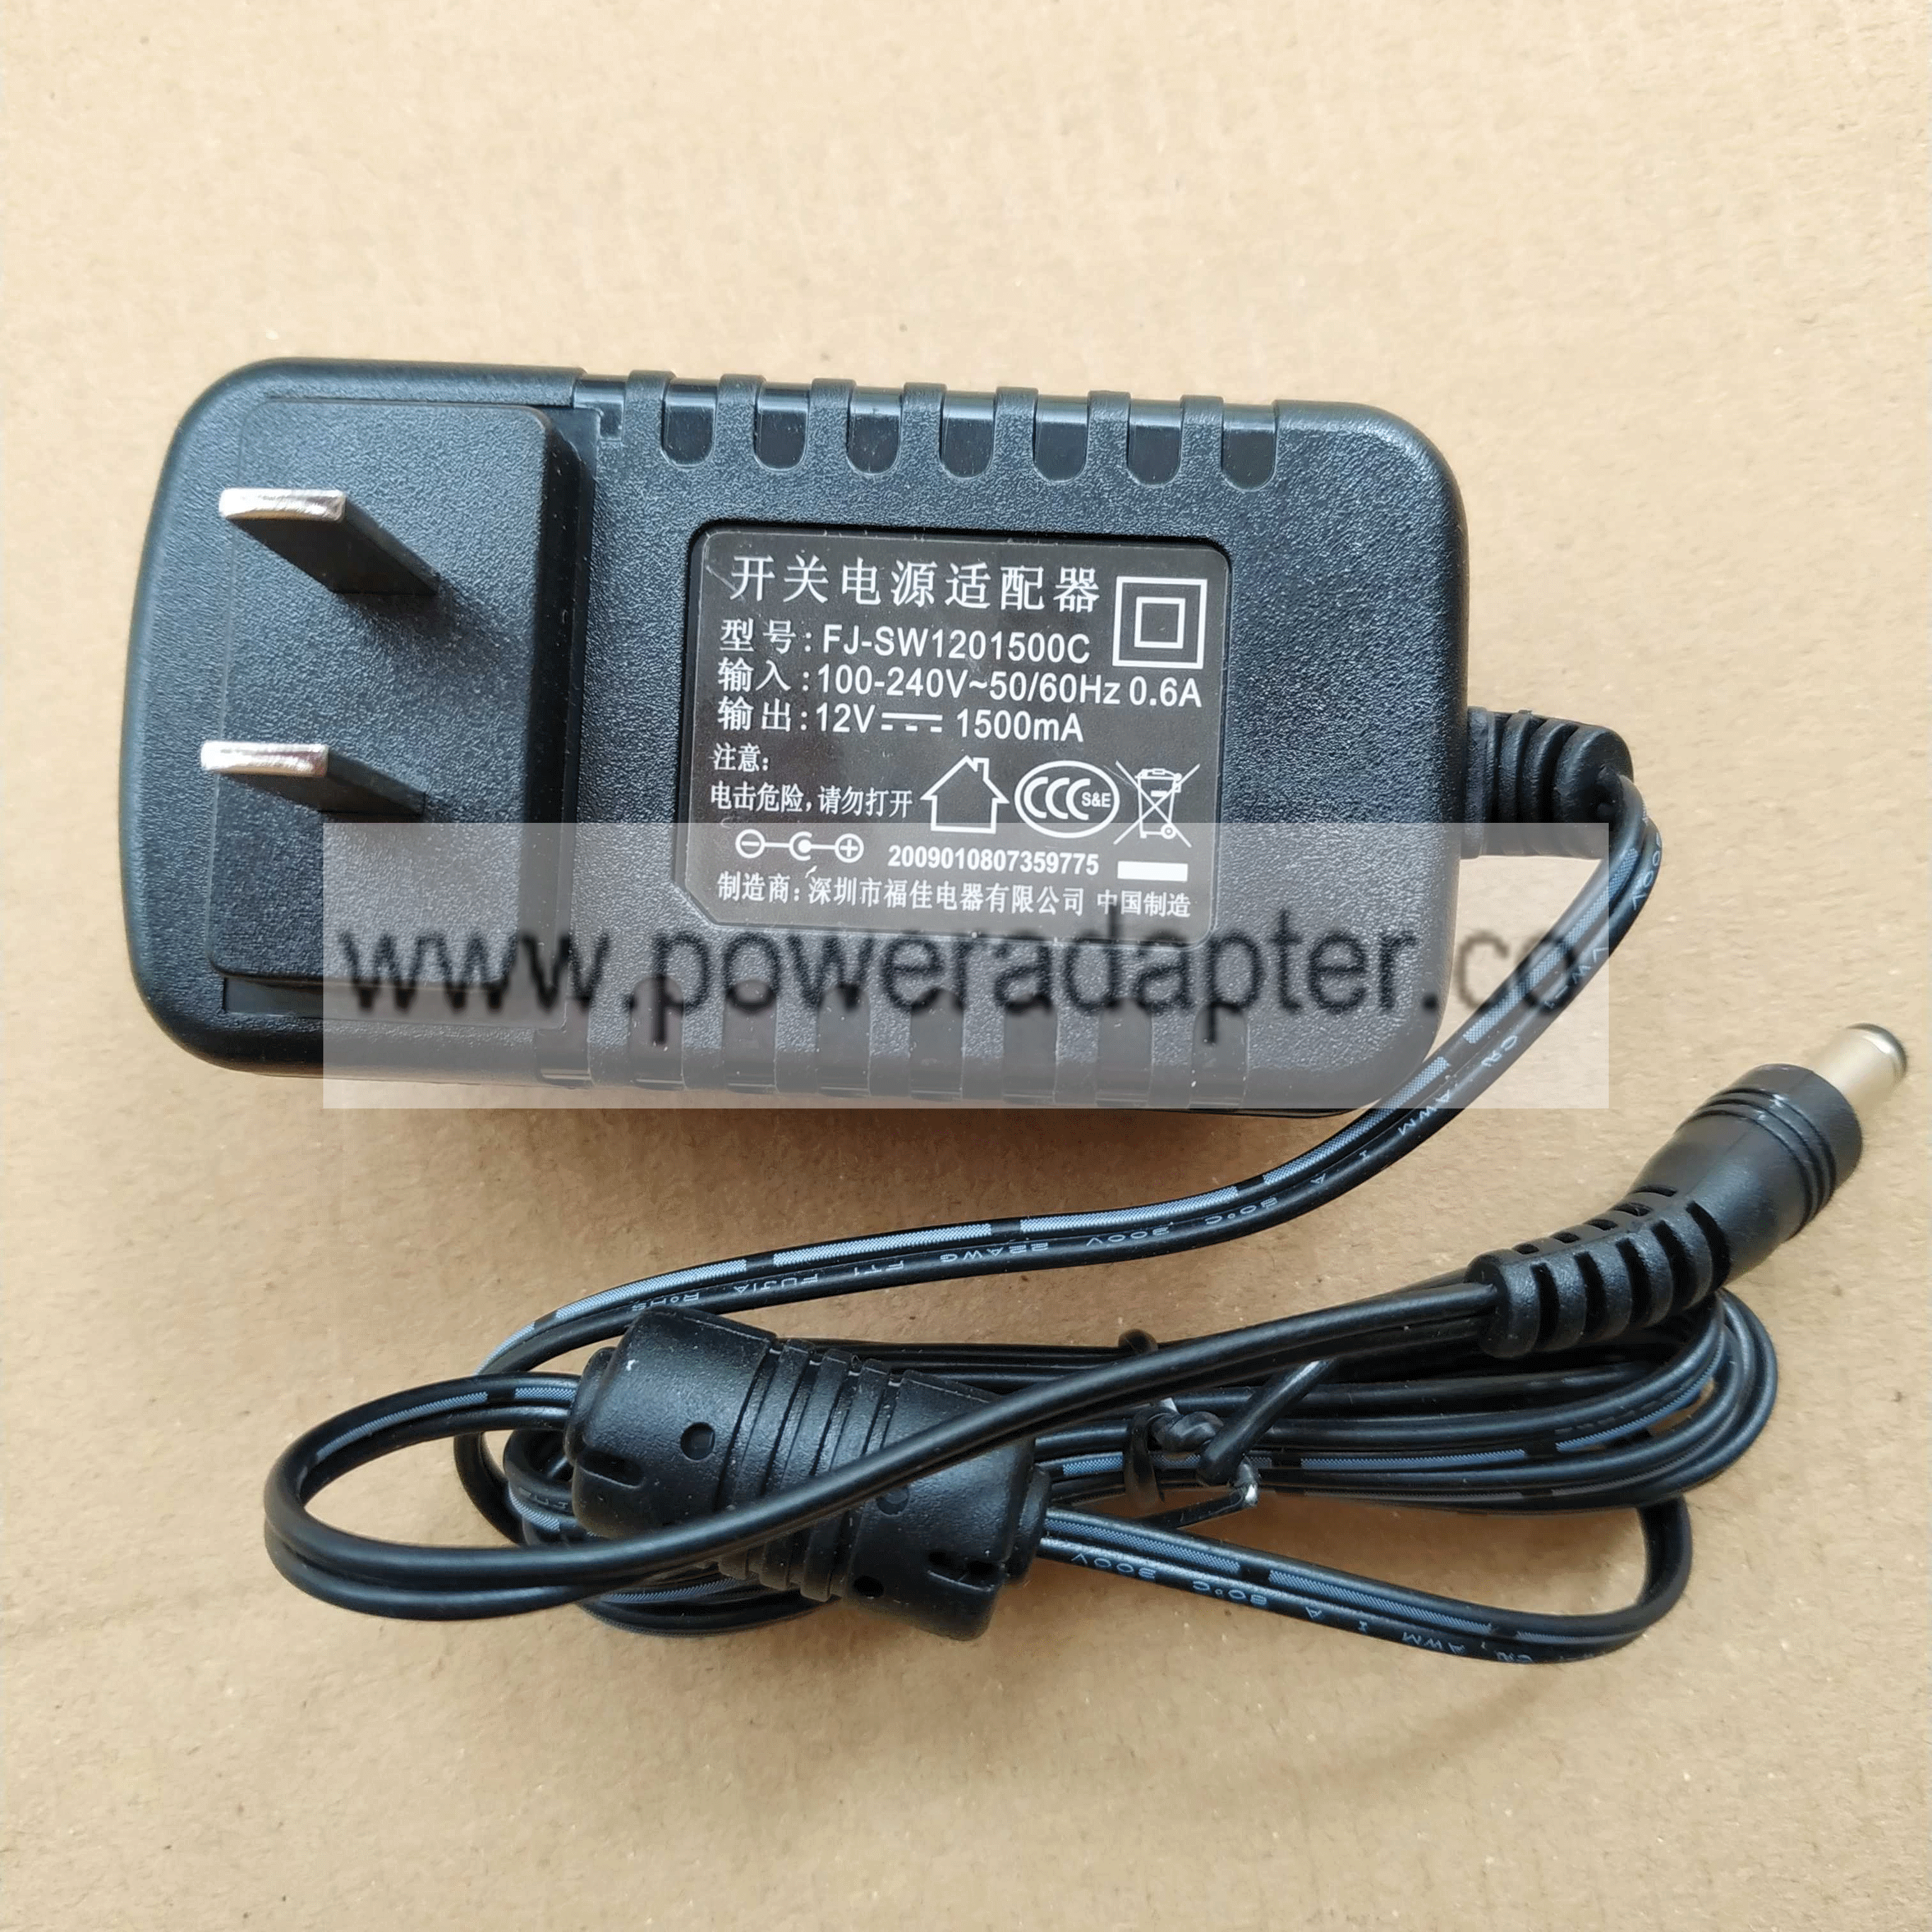 new original fujia 12V 1500mA ac power adapter charger FJ-SW1201500C DELIPPO ： brand: FUJIA model: FJ-SW1201